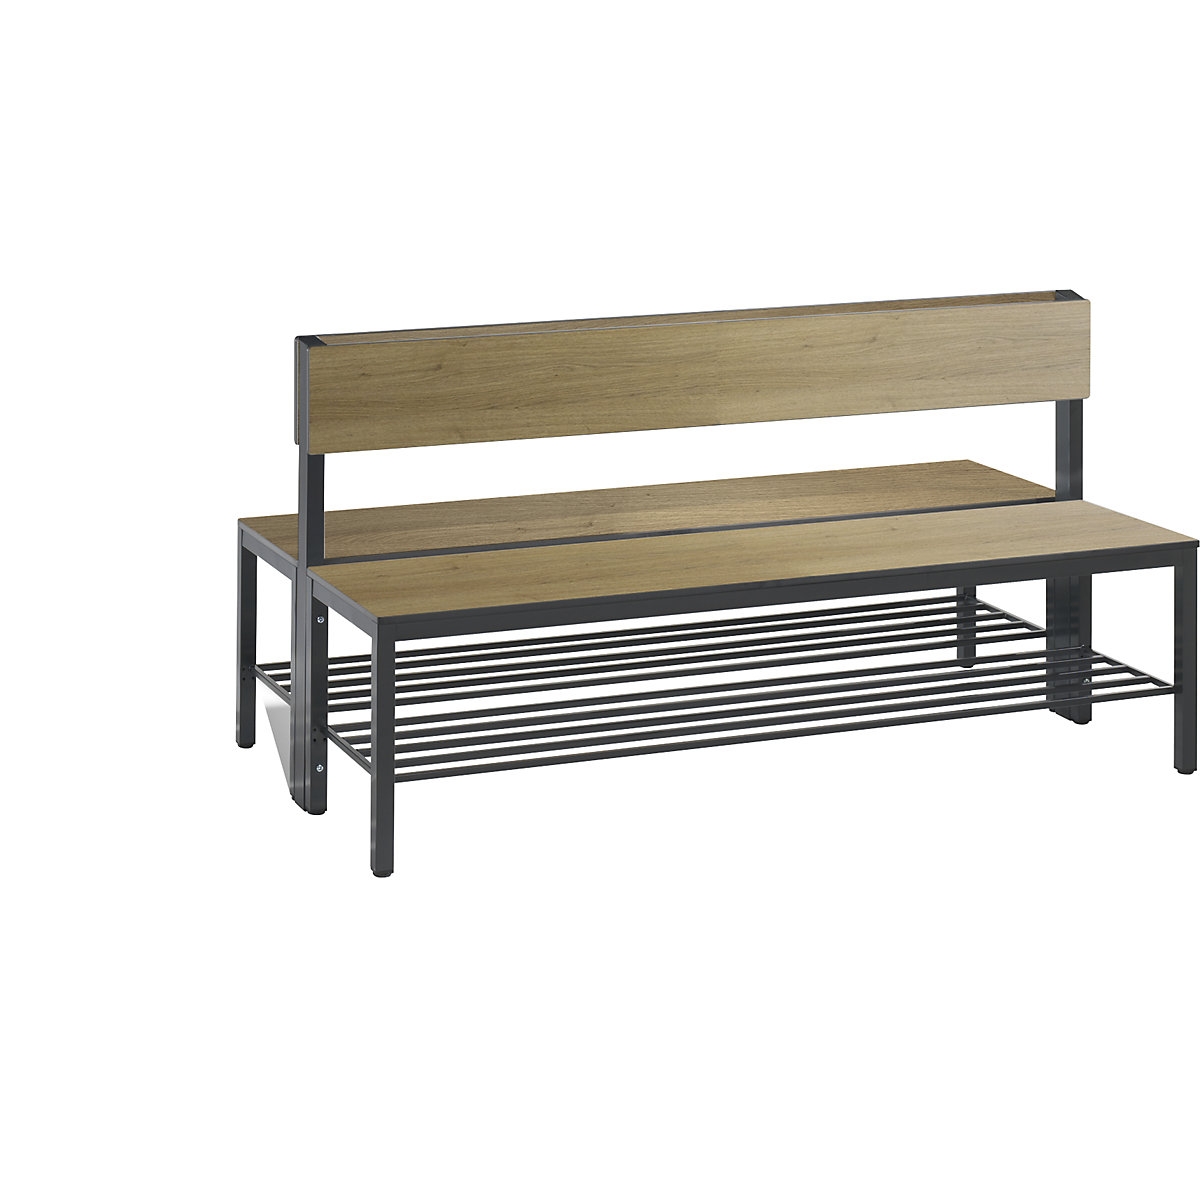 Šatnová lavice BASIC PLUS, oboustranná – C+P, plocha sedáku z HPL, poloviční výška, rošt na obuv, délka 1500 mm, dekor dub-8